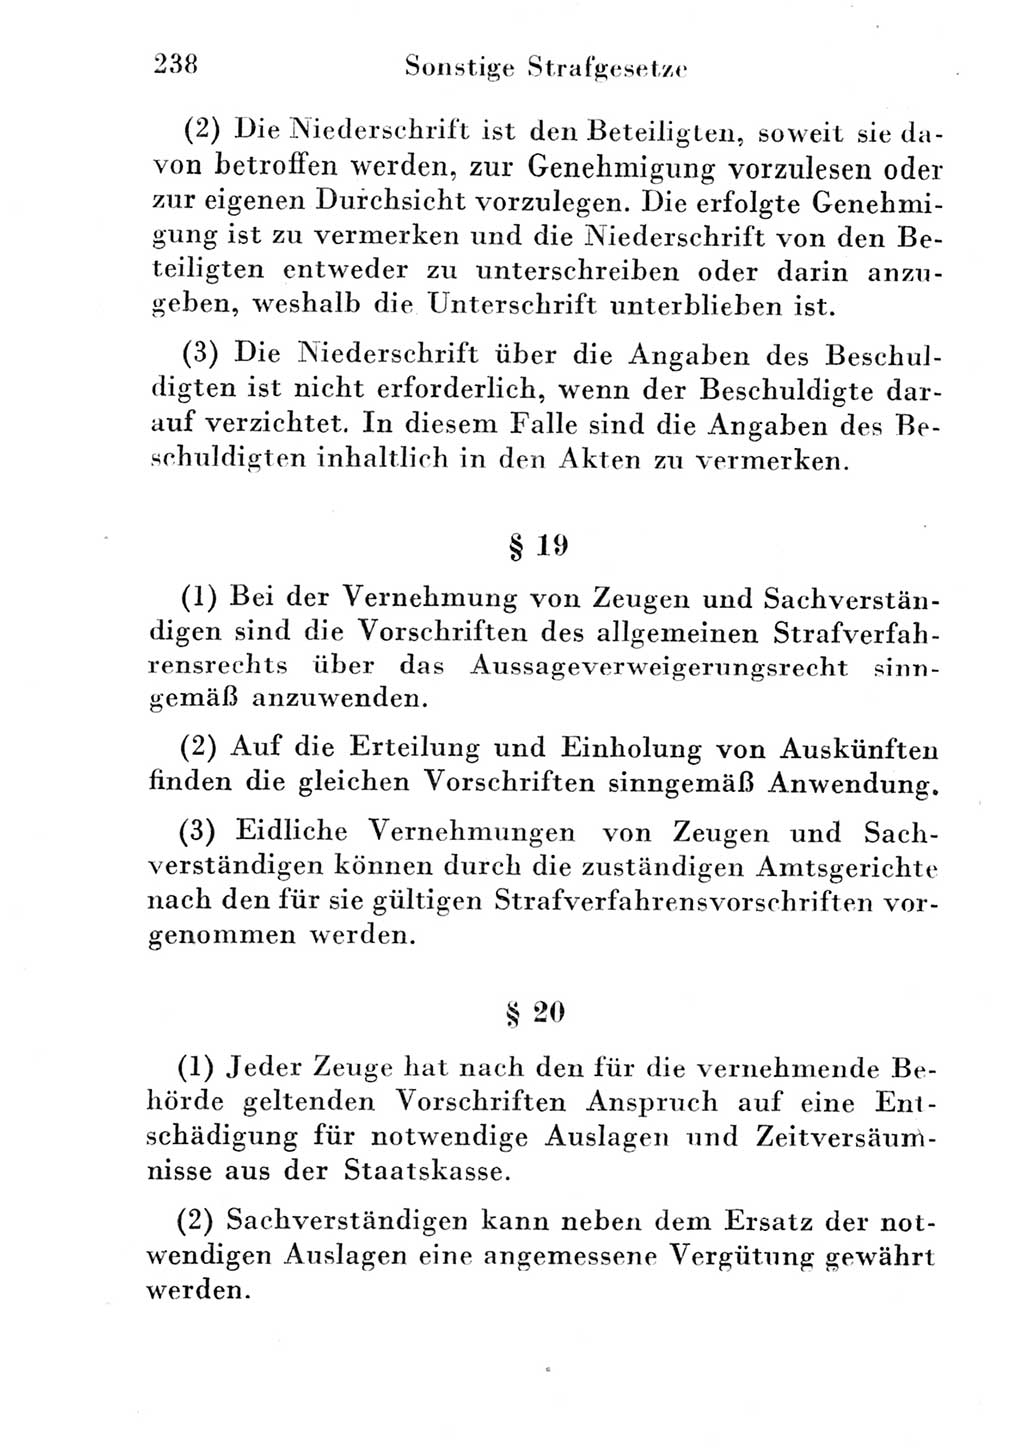 Strafgesetzbuch (StGB) und andere Strafgesetze [Deutsche Demokratische Republik (DDR)] 1951, Seite 238 (StGB Strafges. DDR 1951, S. 238)